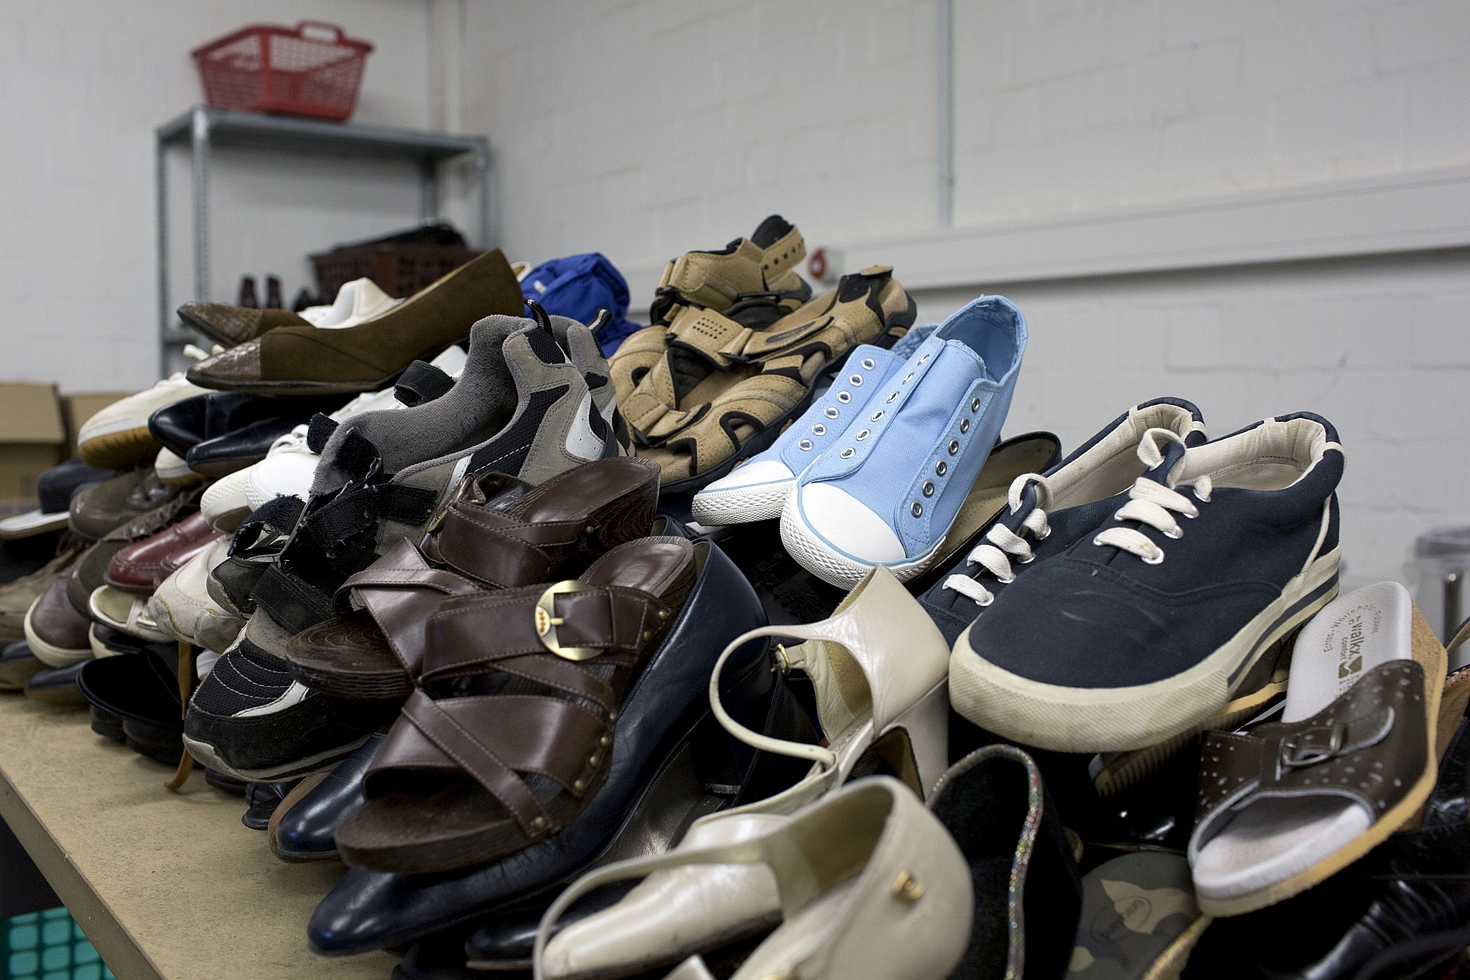 Foto: Verschiedenste Schuhpaare liegen auf einem Haufen